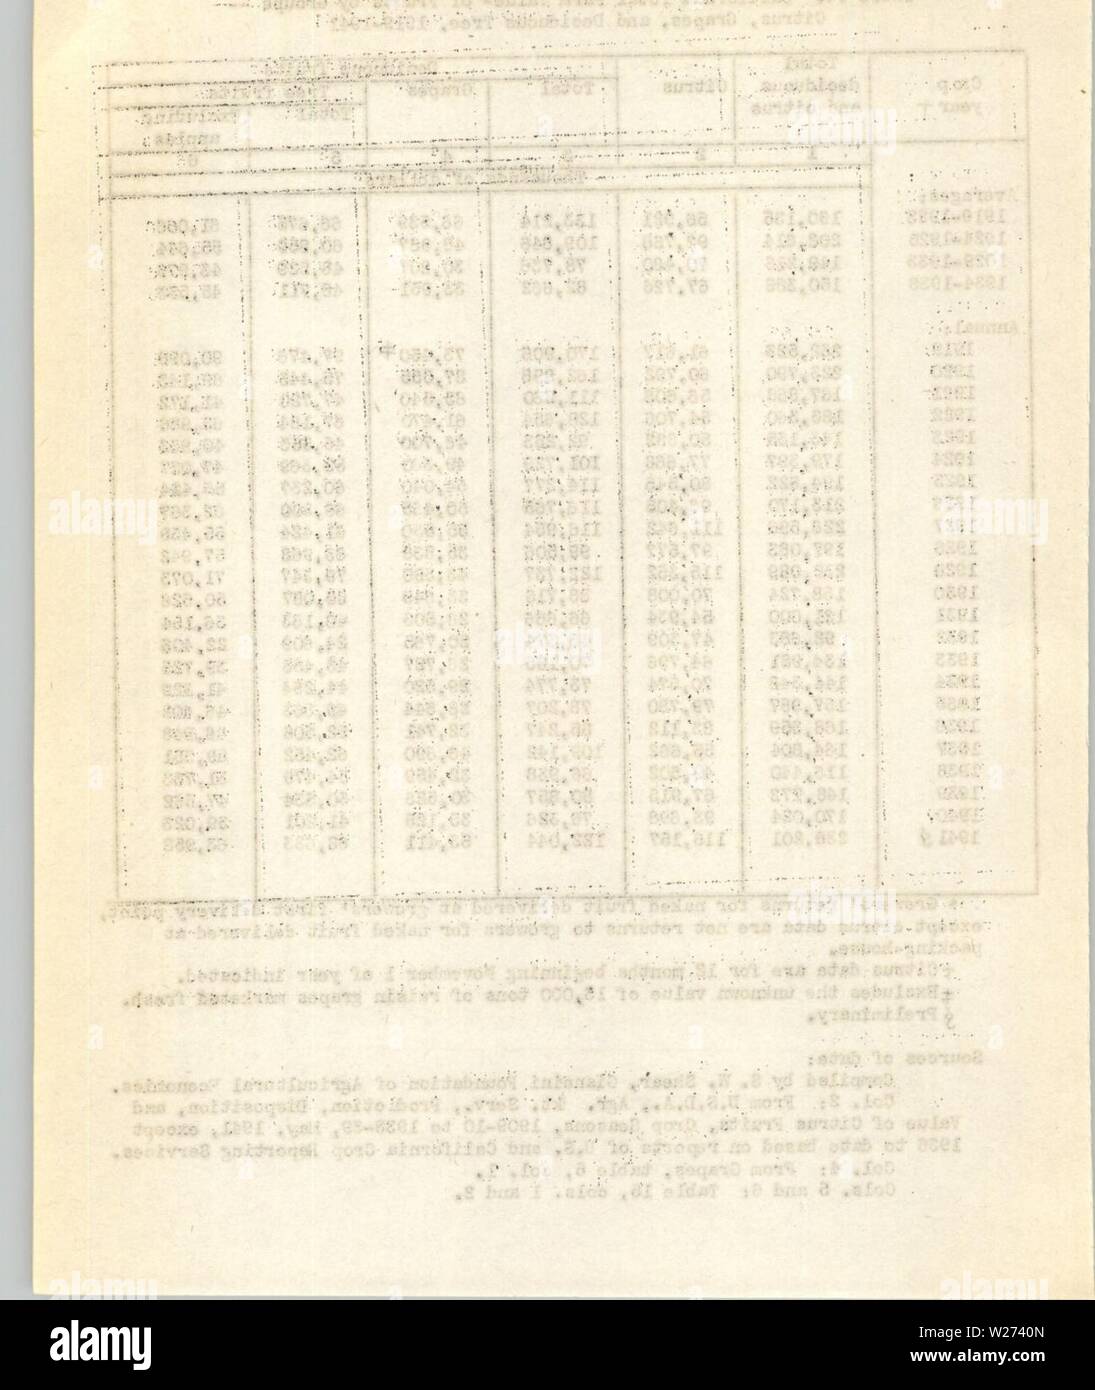 Image d'archive à partir de la page 37 de la statistique à feuilles caduques comme de. Statistiques à feuilles caduques à compter de janvier 1942 deciduousfruitst79shea Année : 1942 Banque D'Images